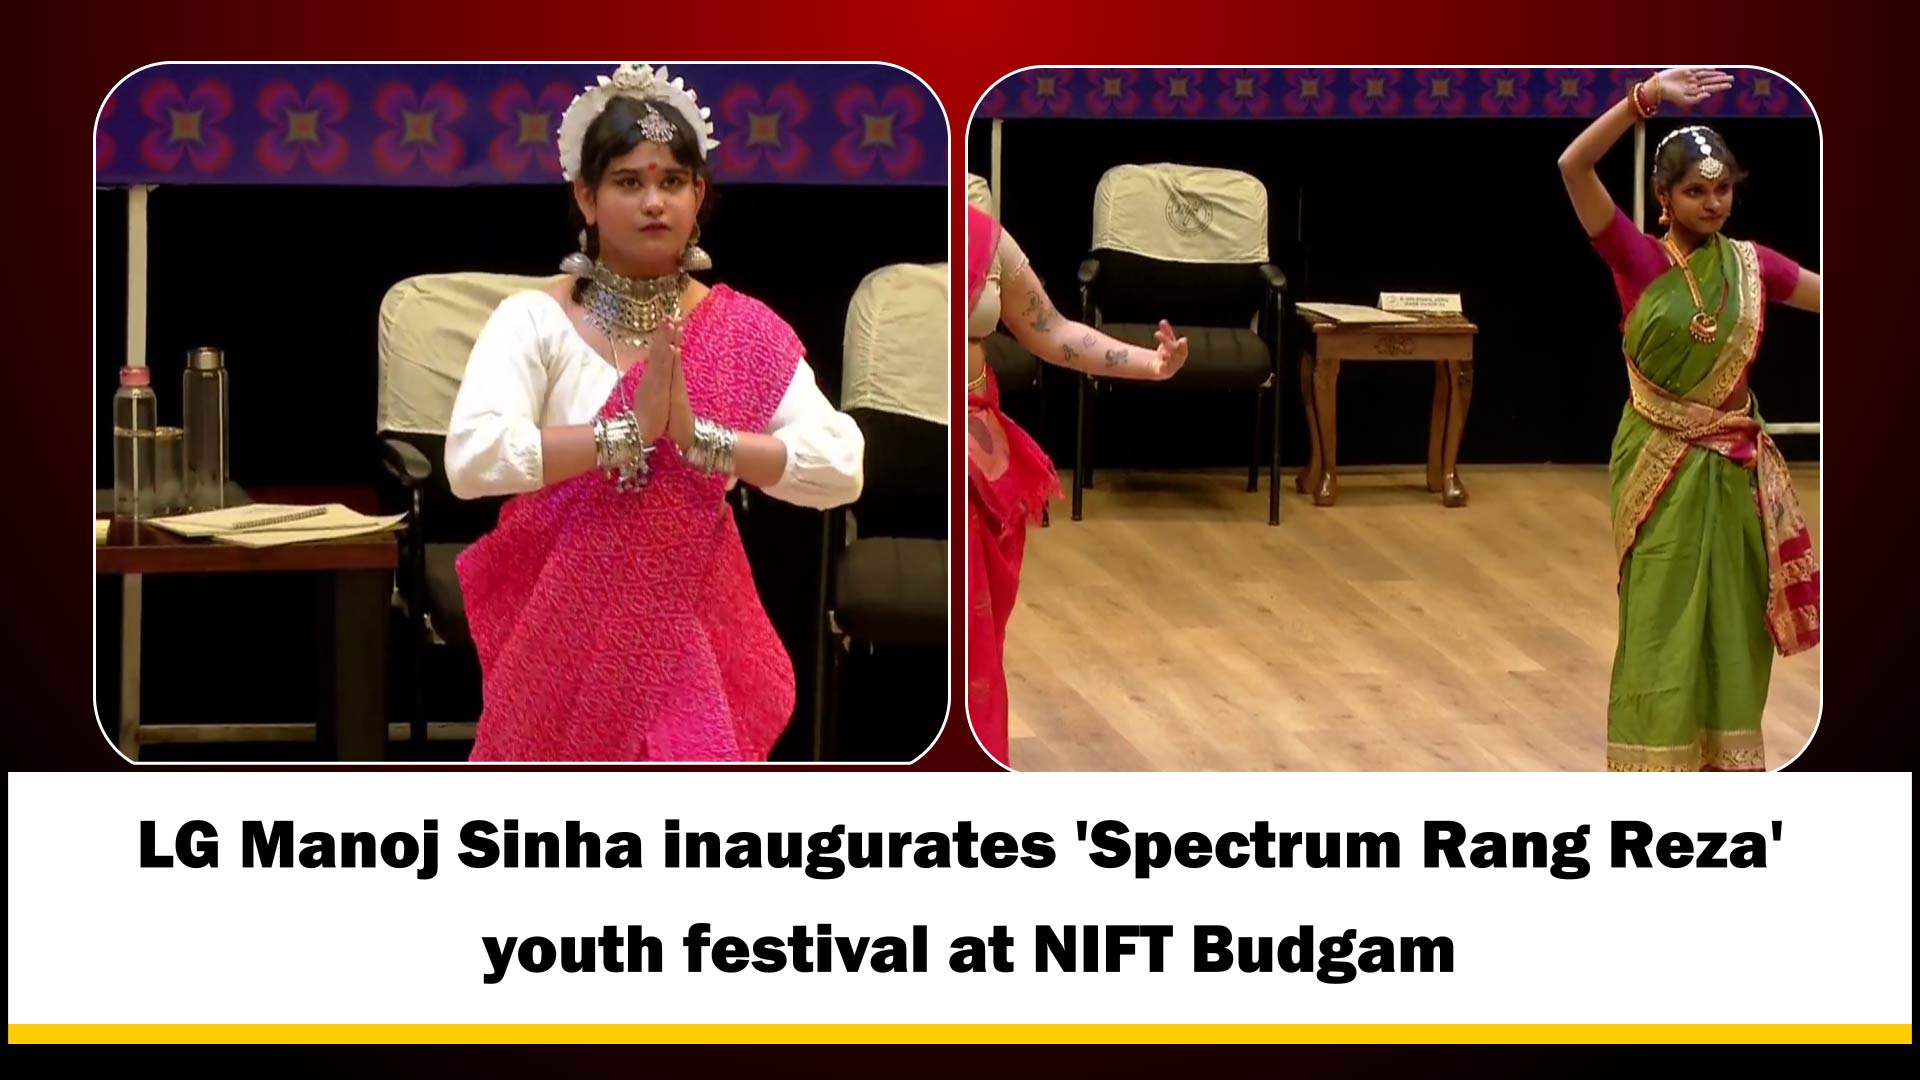 LG Manoj Sinha inaugurates 'Spectrum Rang Reza' youth festival at NIFT Budgam